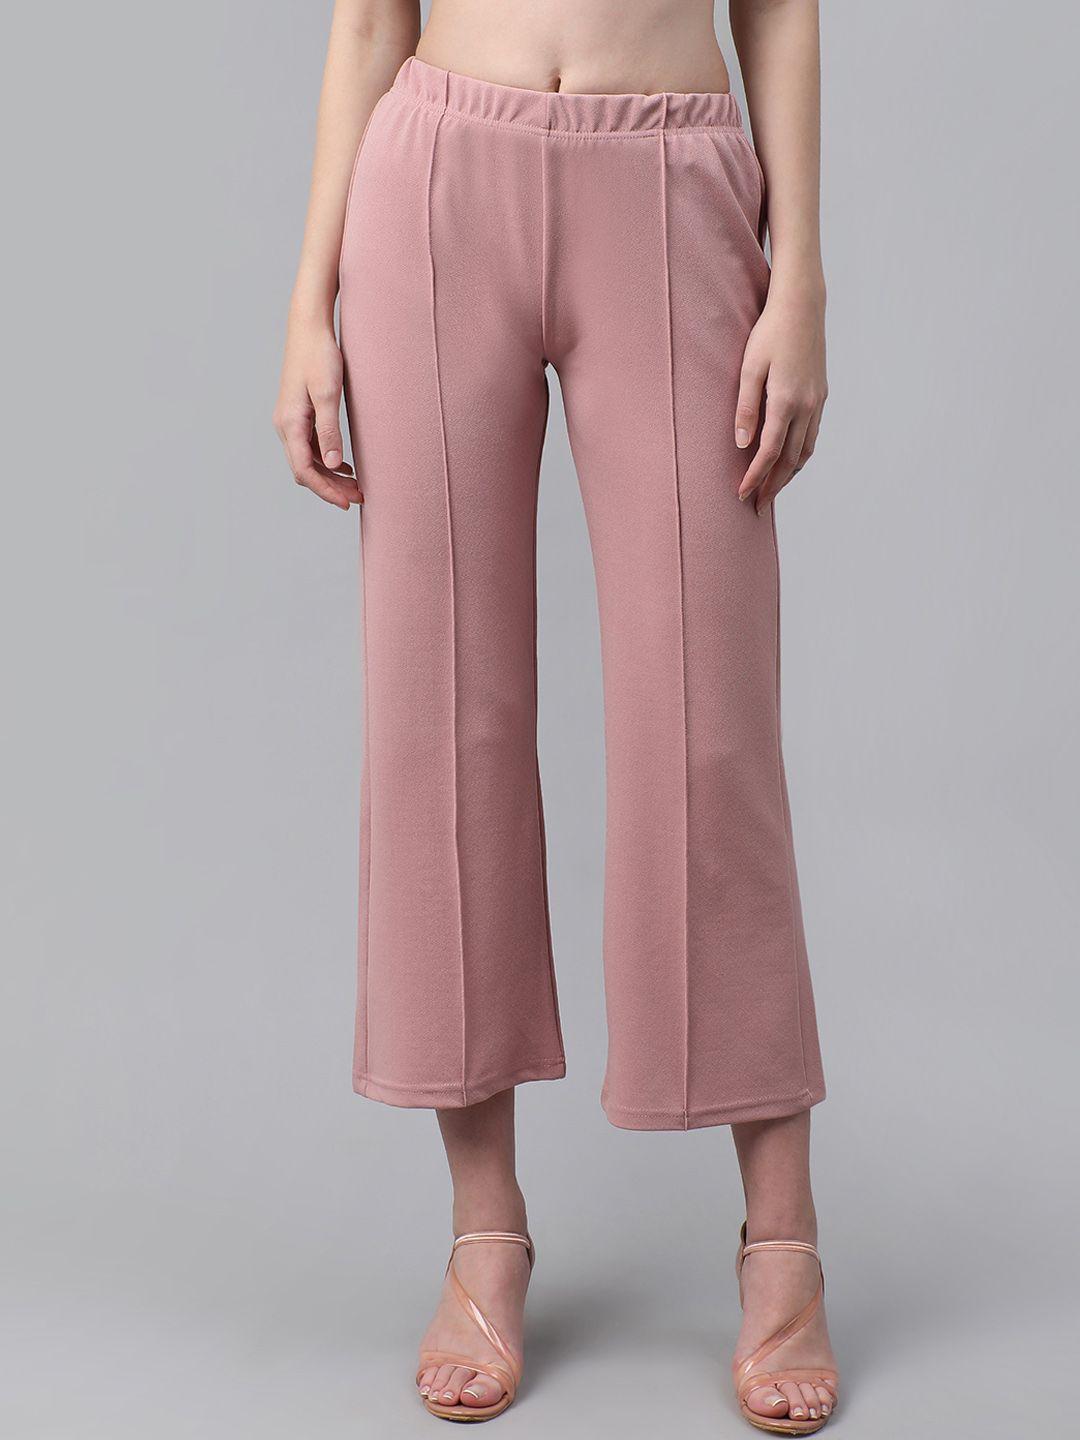 baesd women pink smart trousers